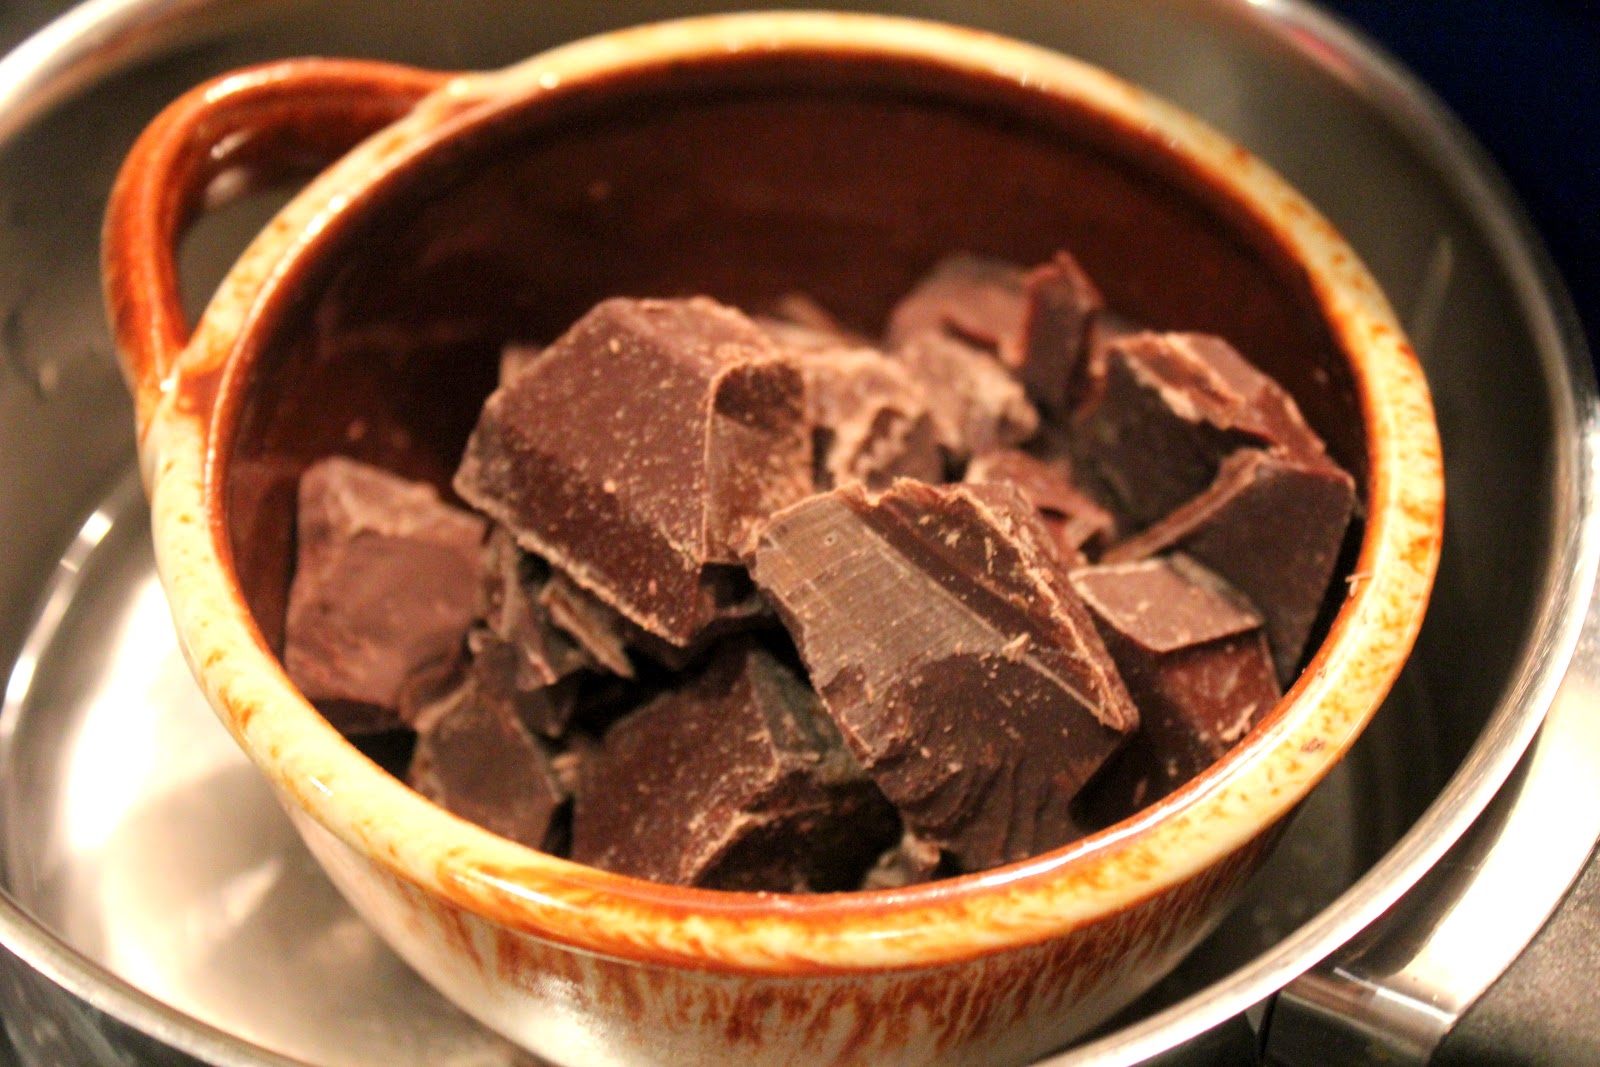 Selbstgemachte Zartbitter Schokolade — Rezepte Suchen